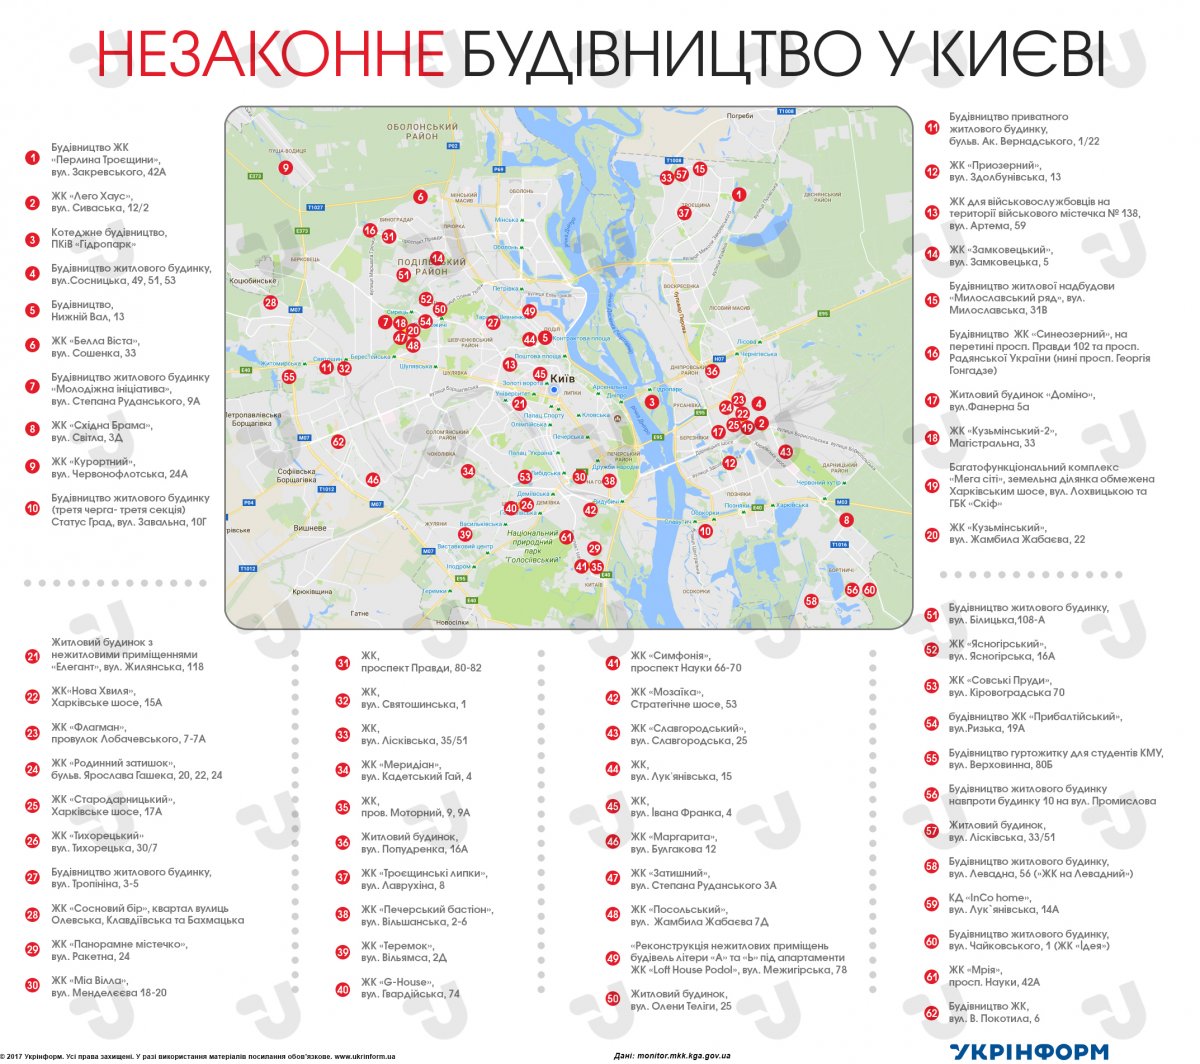 В Киеве незаконно строят более 60 жилых домов (инфографика)